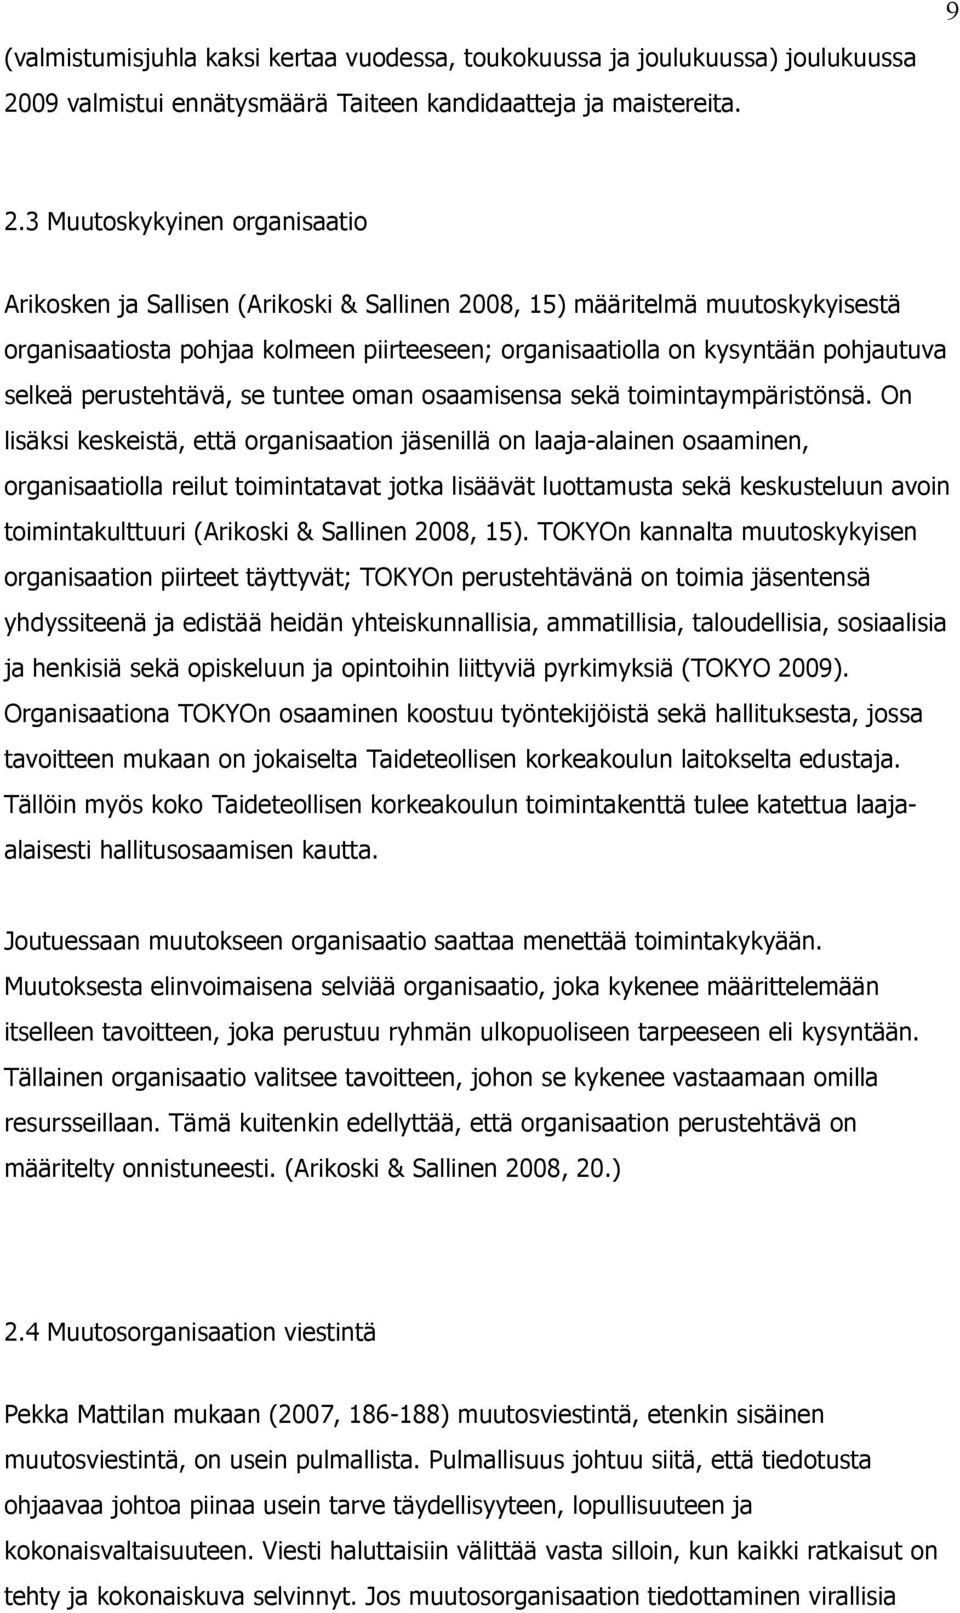 3 Muutoskykyinen organisaatio Arikosken ja Sallisen (Arikoski & Sallinen 2008, 15) määritelmä muutoskykyisestä organisaatiosta pohjaa kolmeen piirteeseen; organisaatiolla on kysyntään pohjautuva